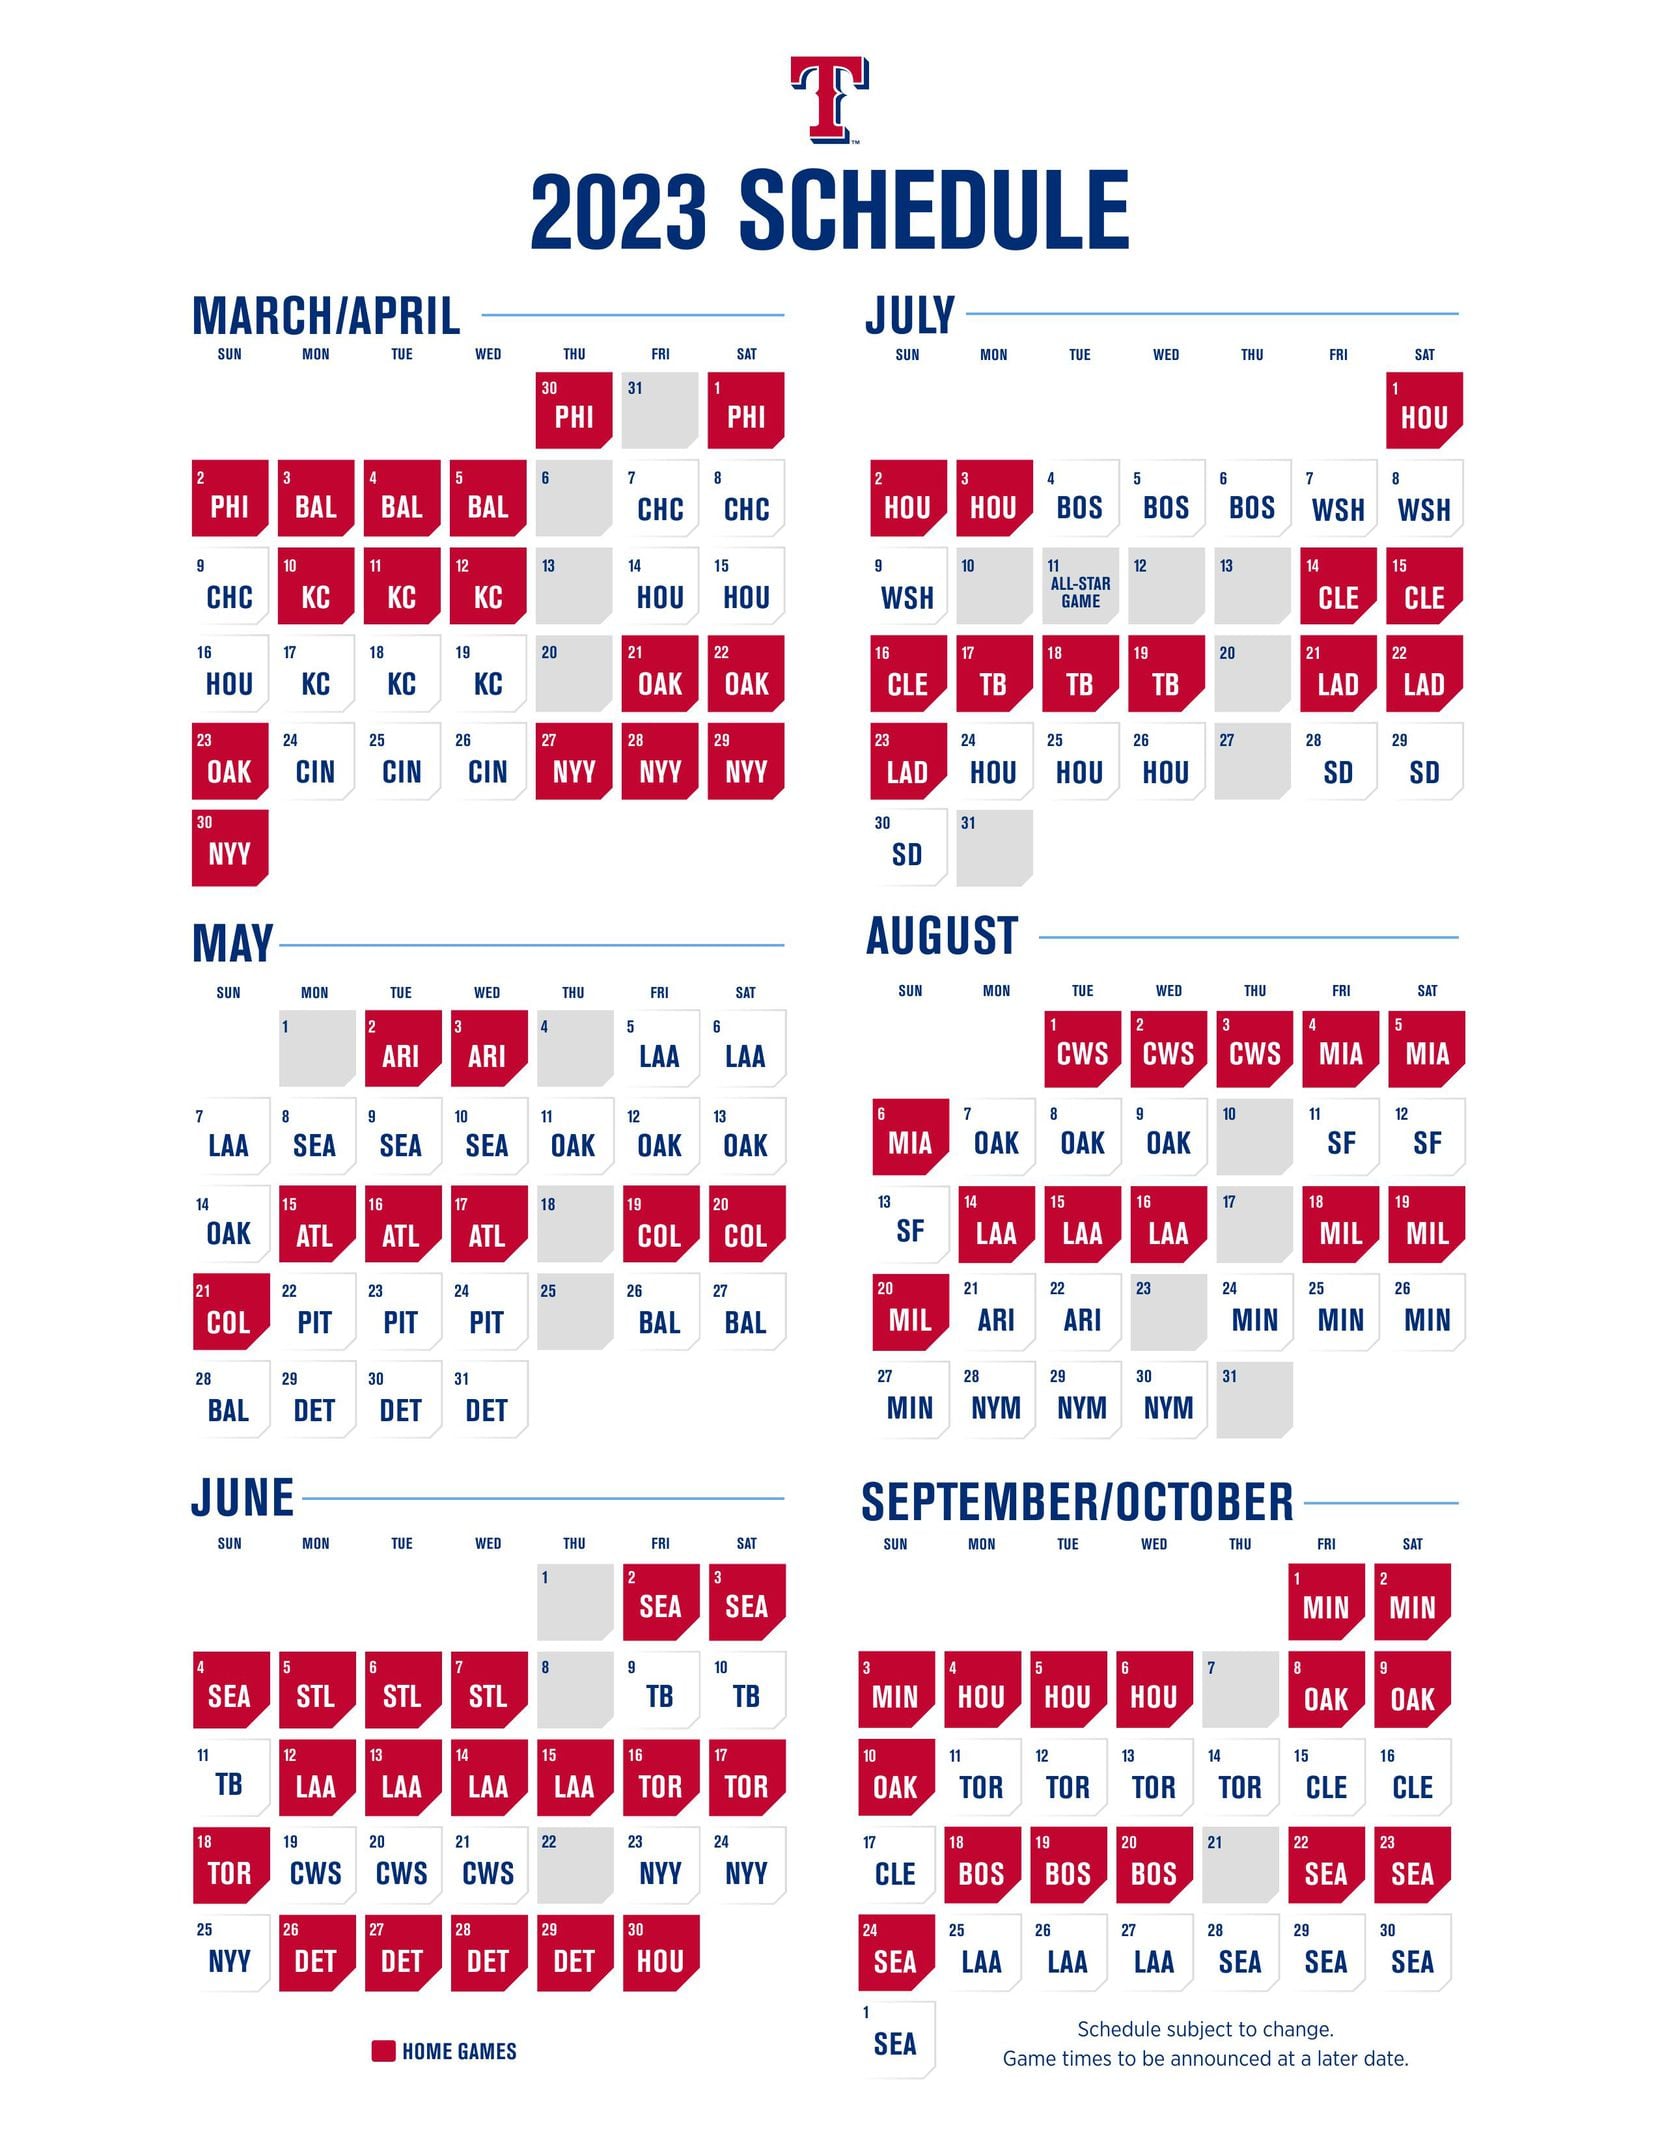 2023 Texas Rangers regularseason schedule released Opening day vs